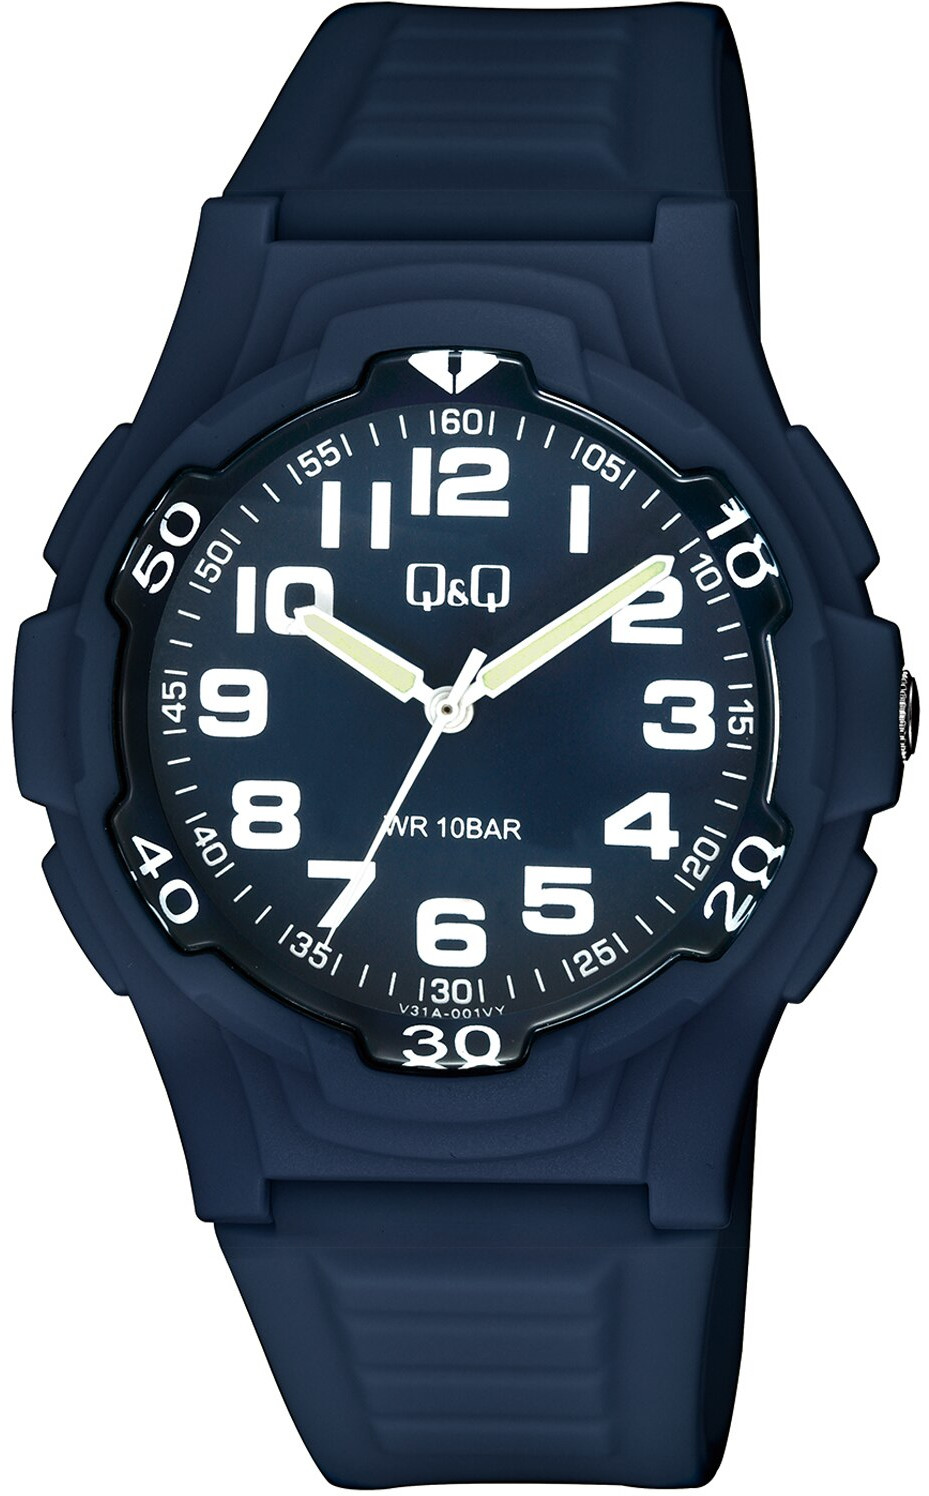 Levně Q&Q Analogové hodinky V31A-001VY